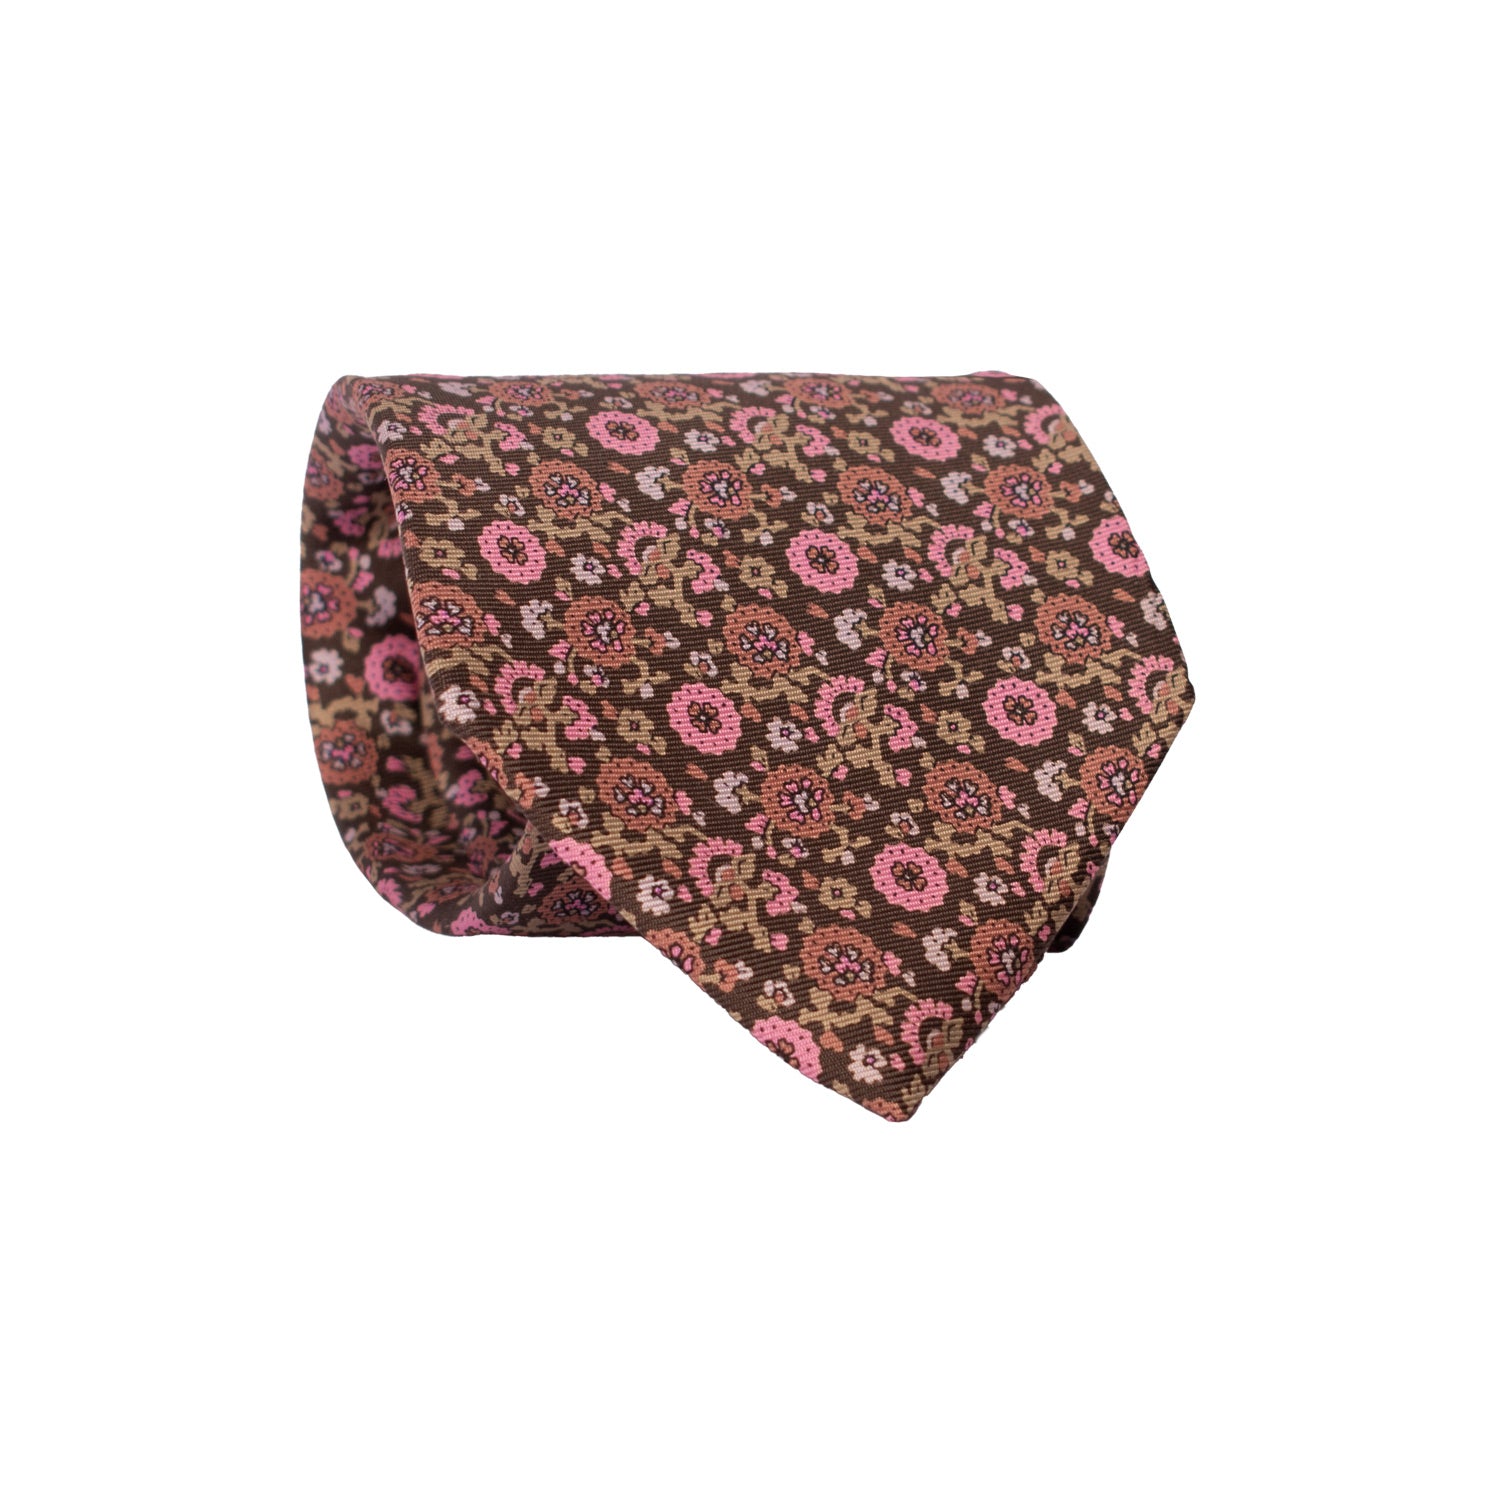 Cravatta Vintage in Twill di Seta Marrone A Fiori Rosa Rosa Antico Beige CV764 Rotolo